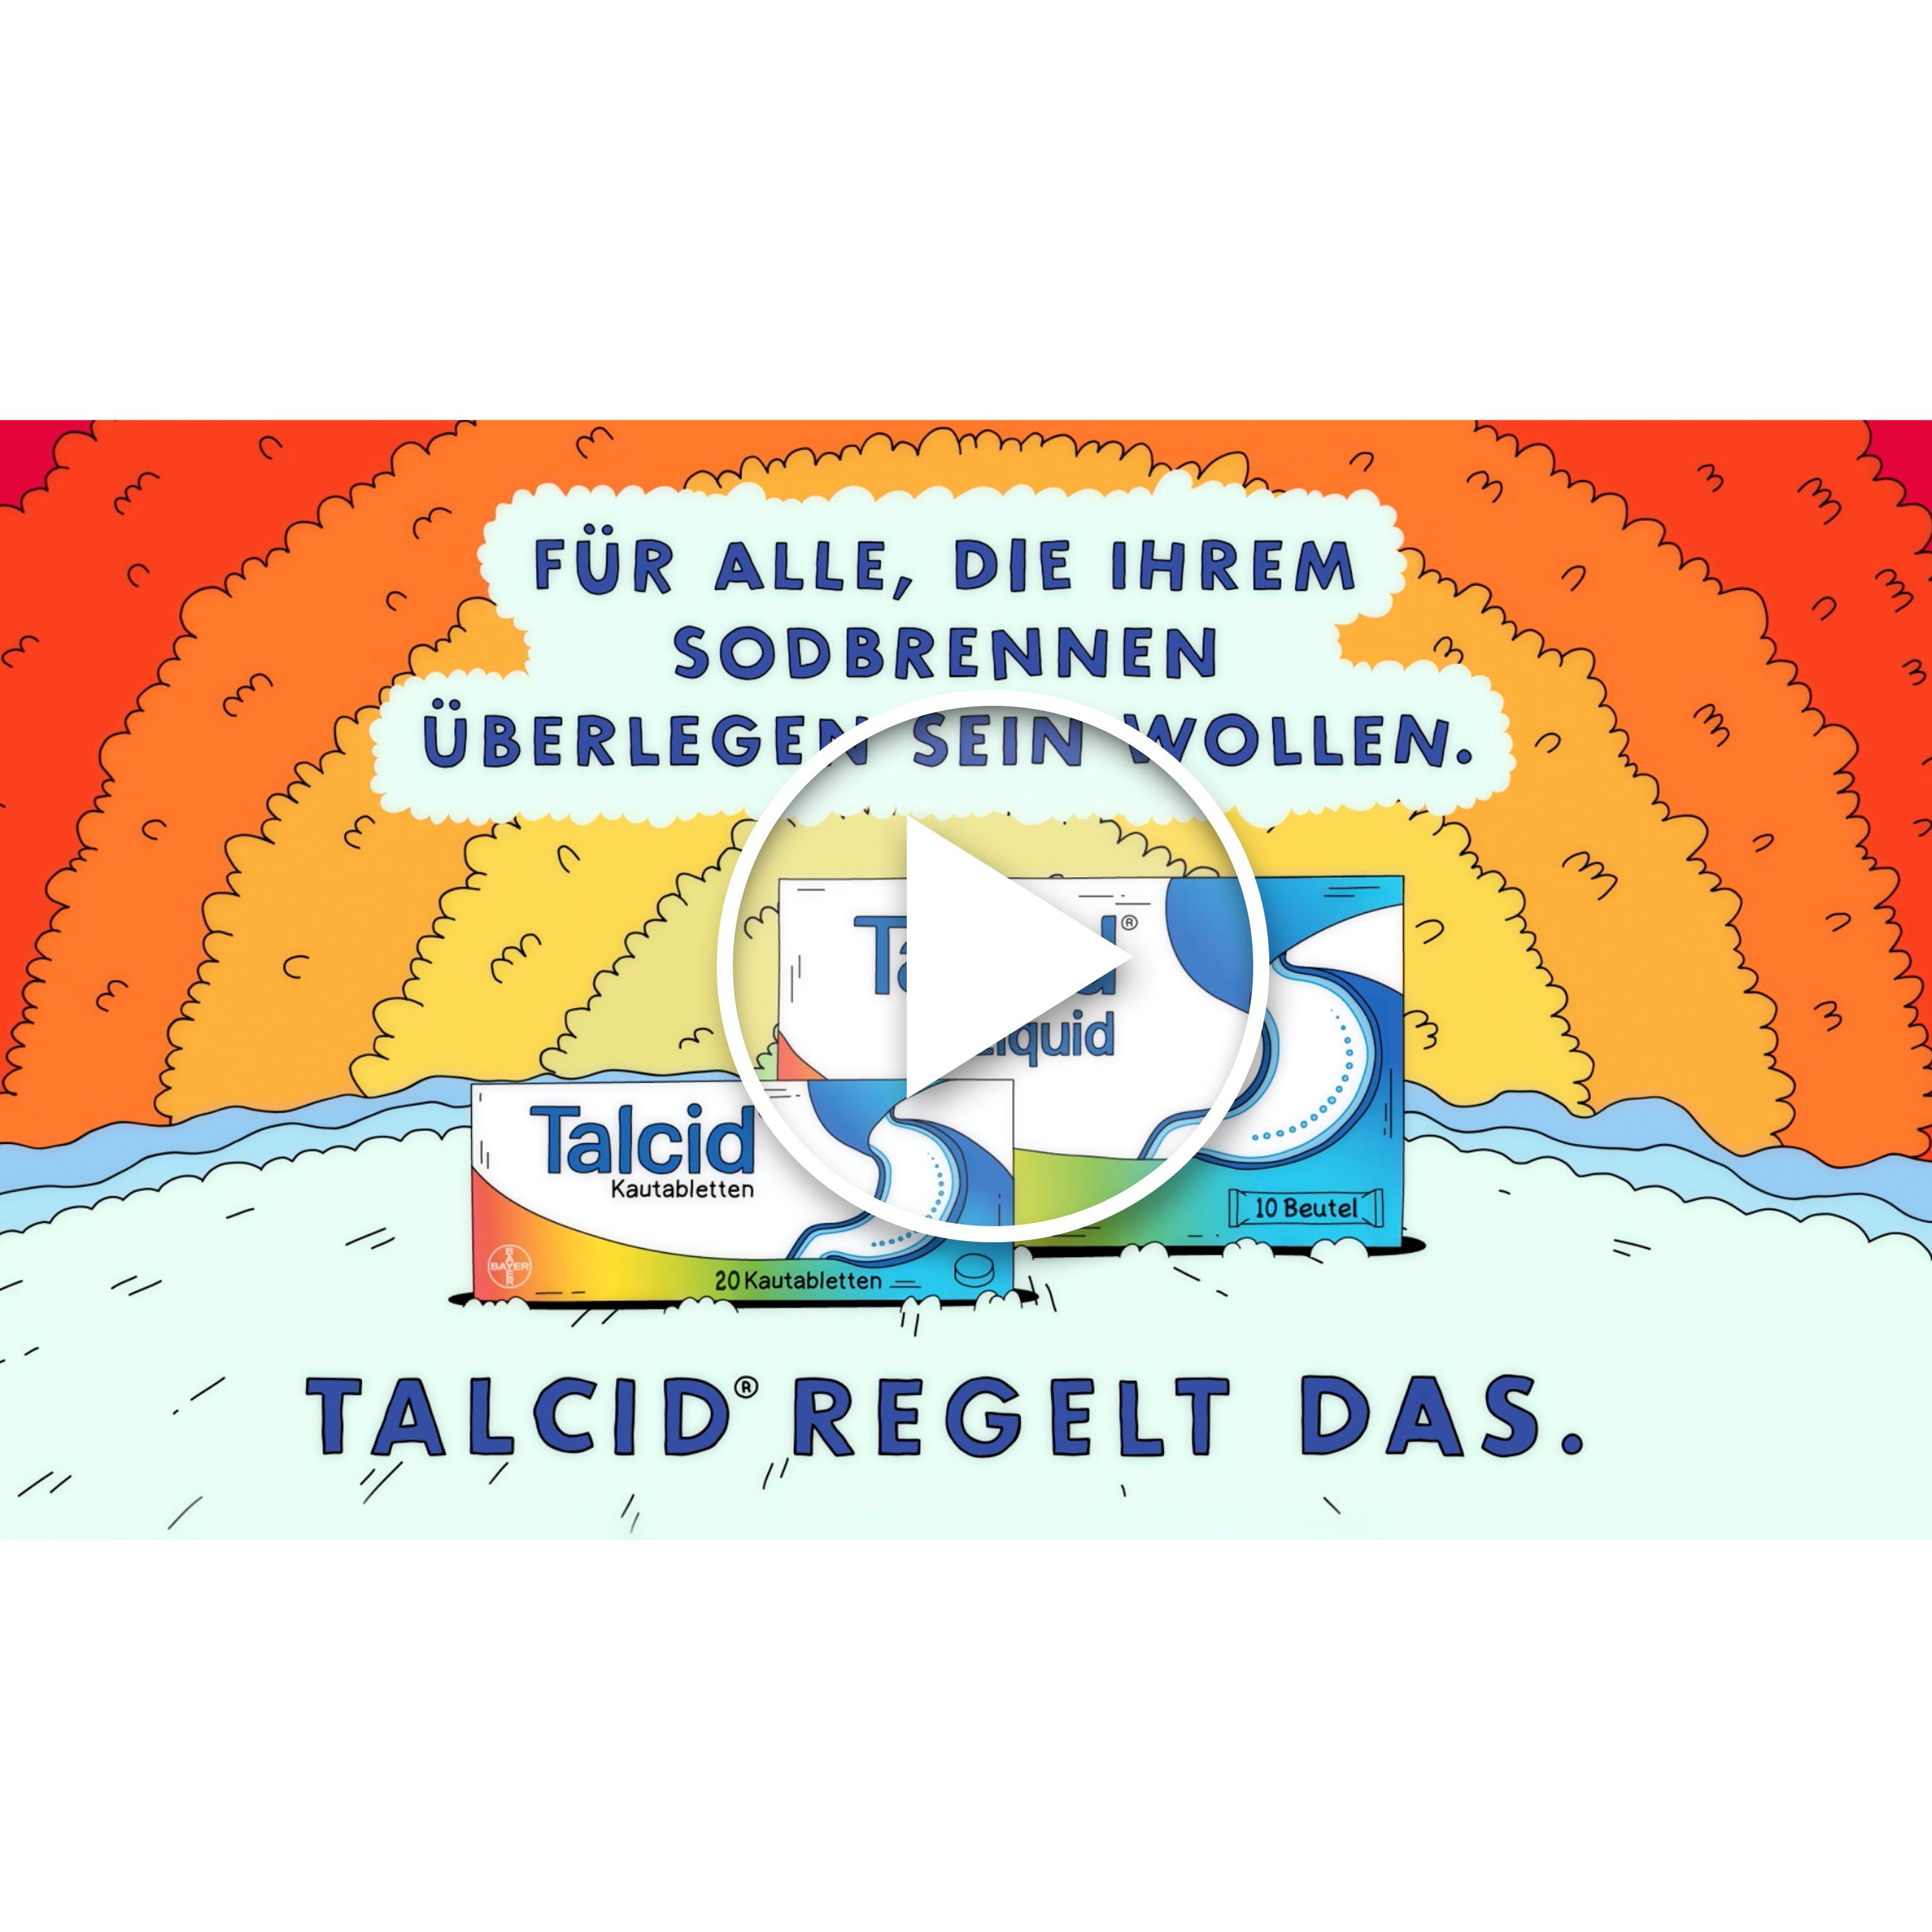 TALCID Liquid gegen Sodbrennen